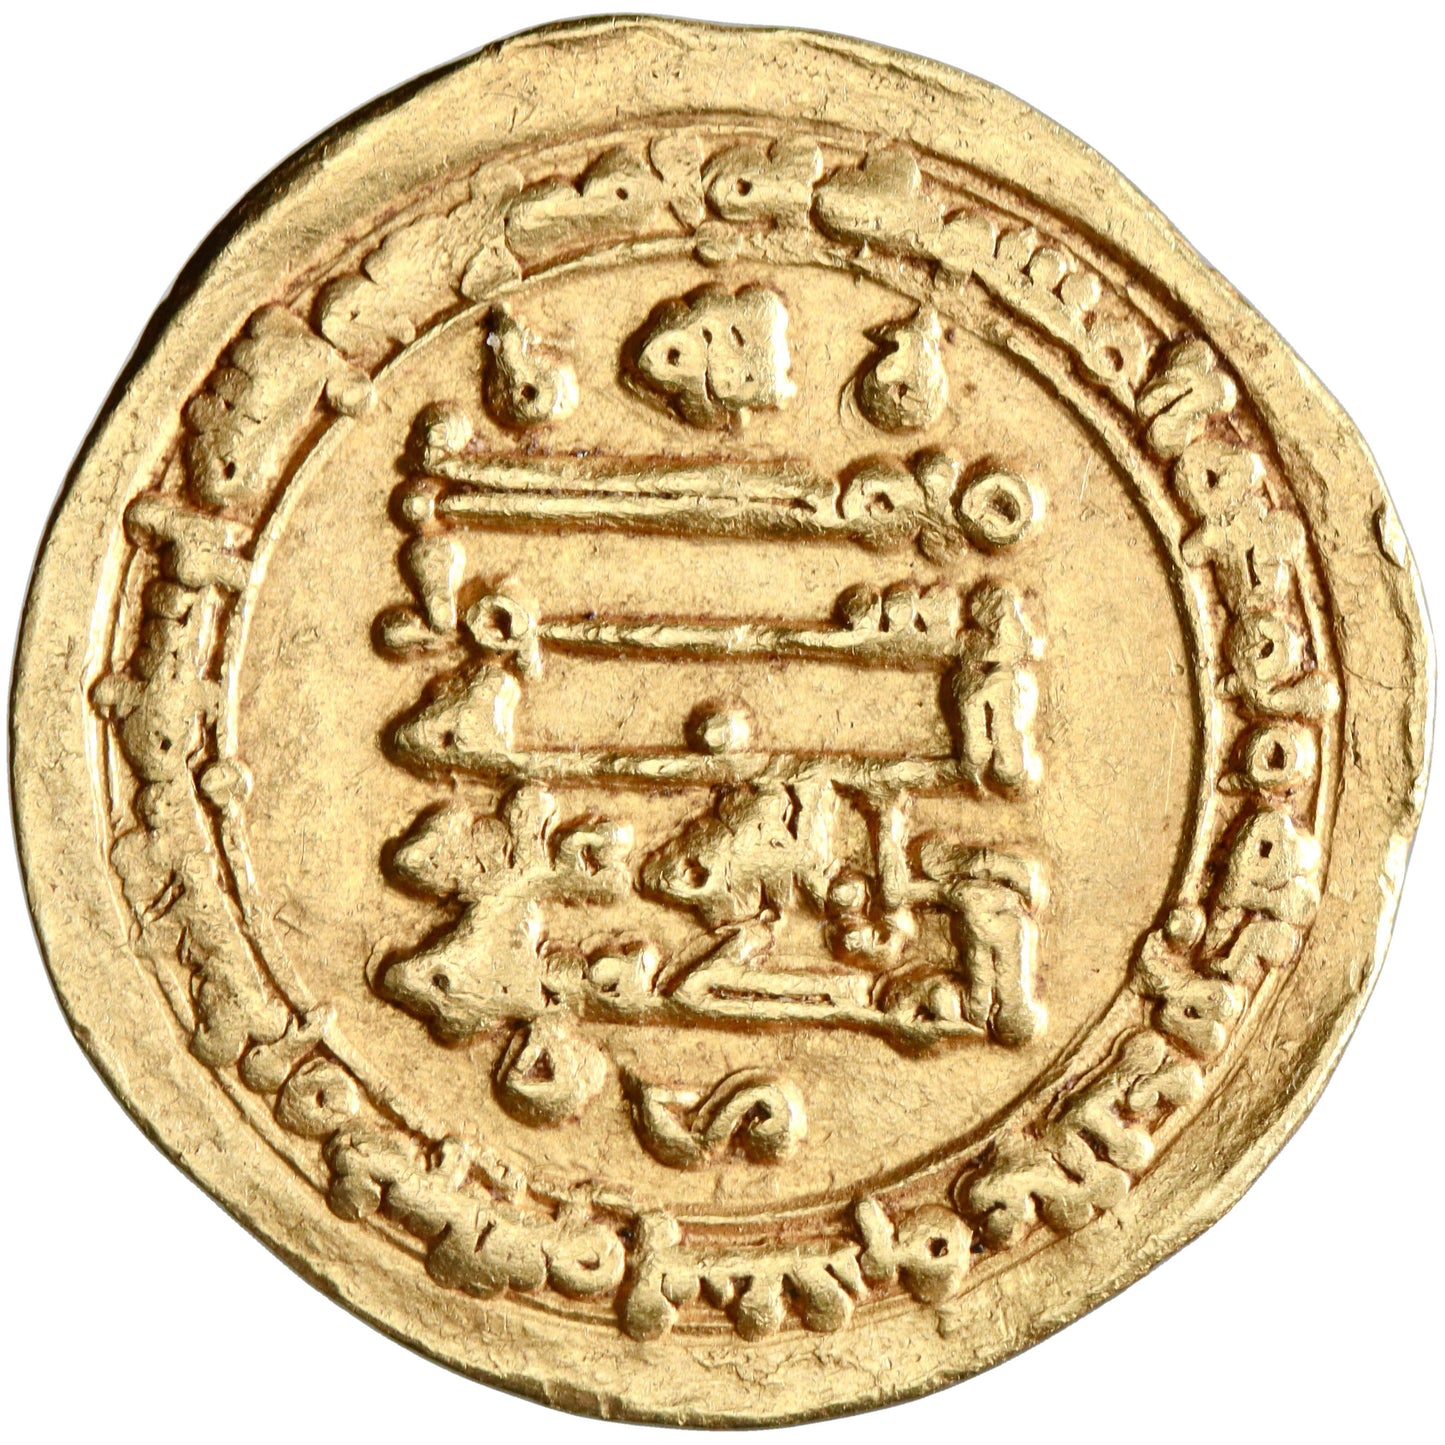 Ikhshidid, Abu Al-Qasim Unujur ibn Al-Ikhshid, gold dinar, Filastin (Palestine) mint, AH 339, citing Al-Muti'